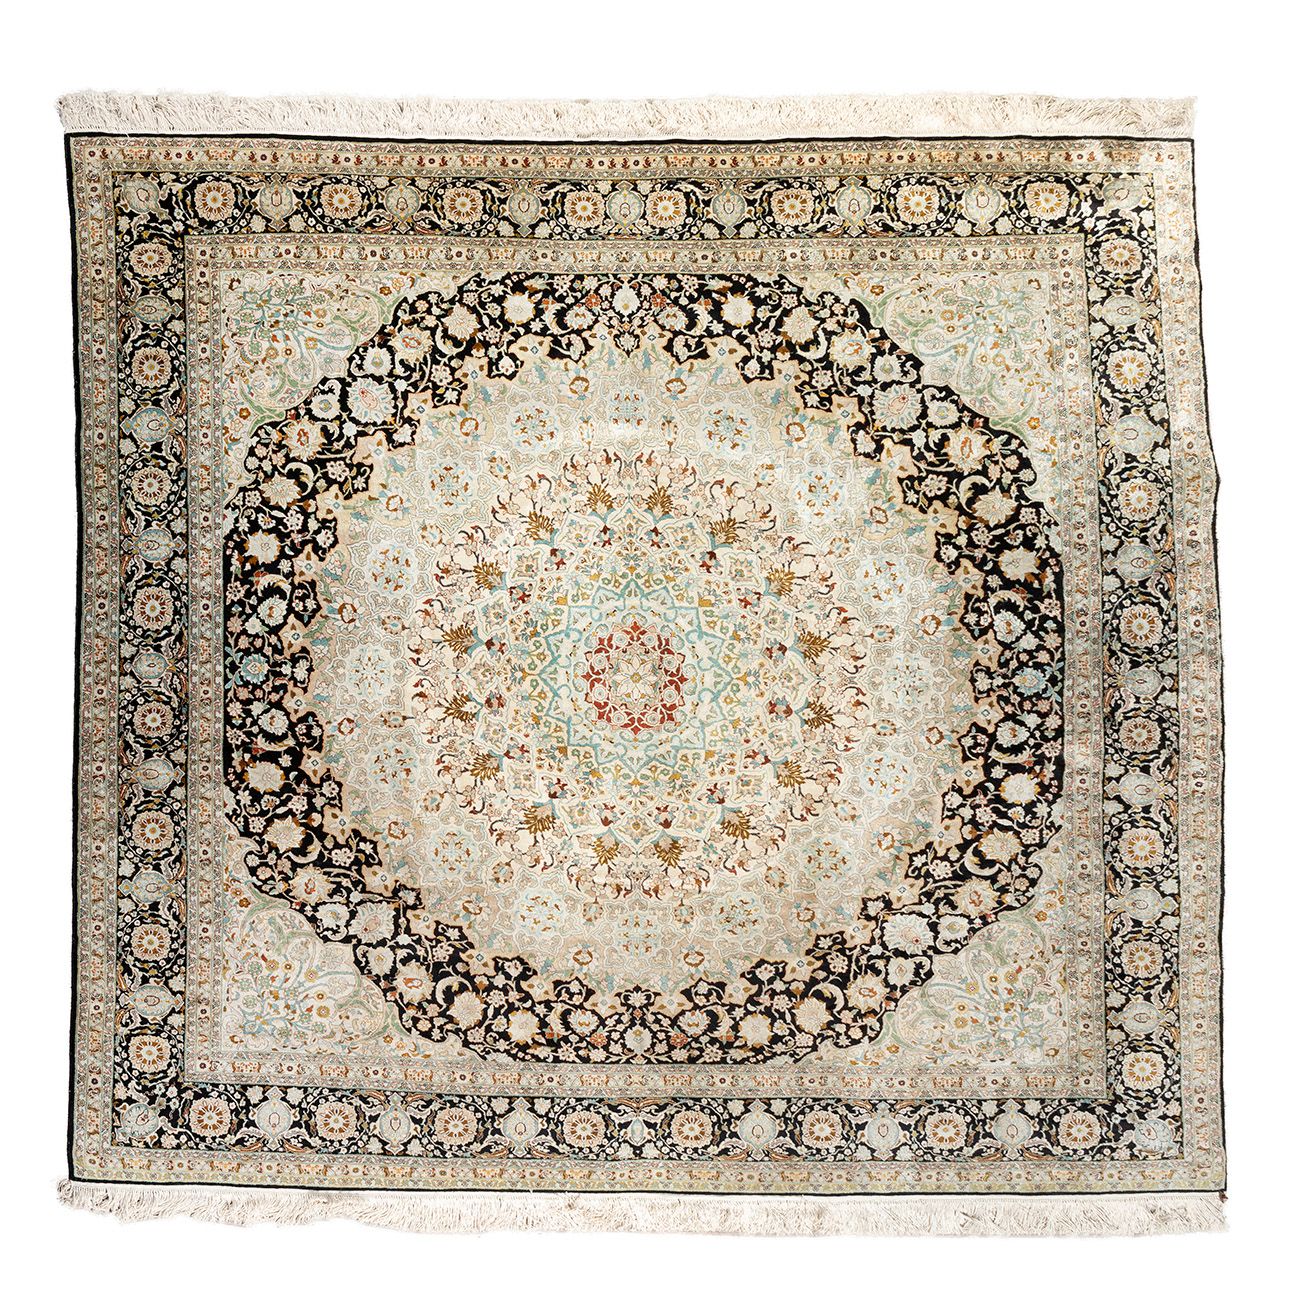 Null 波斯地毯；伊朗，约1970年。
羊毛和丝绸。810.000结/平方米。
出处。Sheikh Youssef Al Khereiji.
尺寸：250 x&hellip;